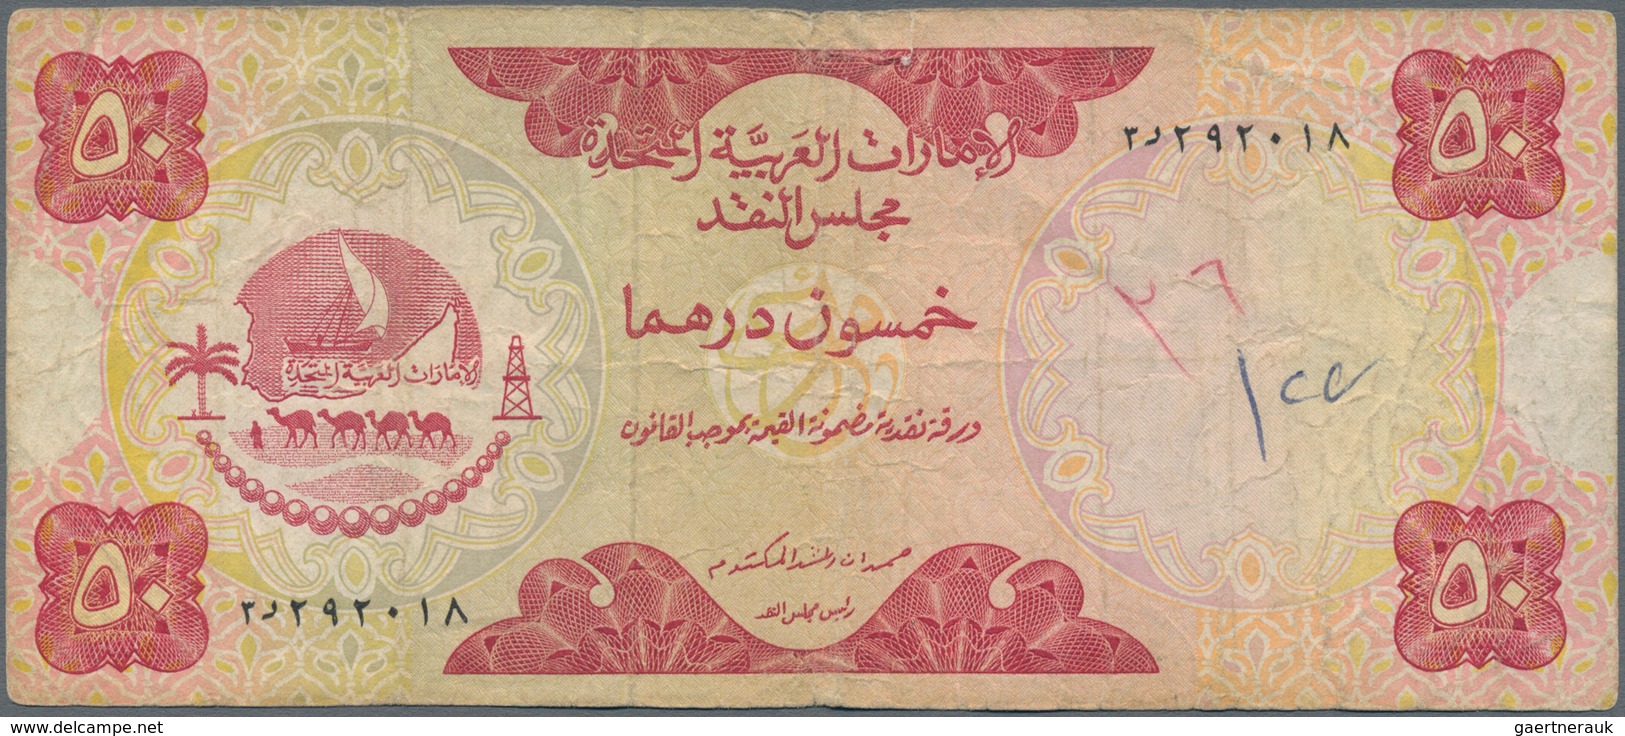 United Arab Emirates / Vereinigte Arabische Emirate: United Arab Emirates Currency Board Pair With 5 - Ver. Arab. Emirate